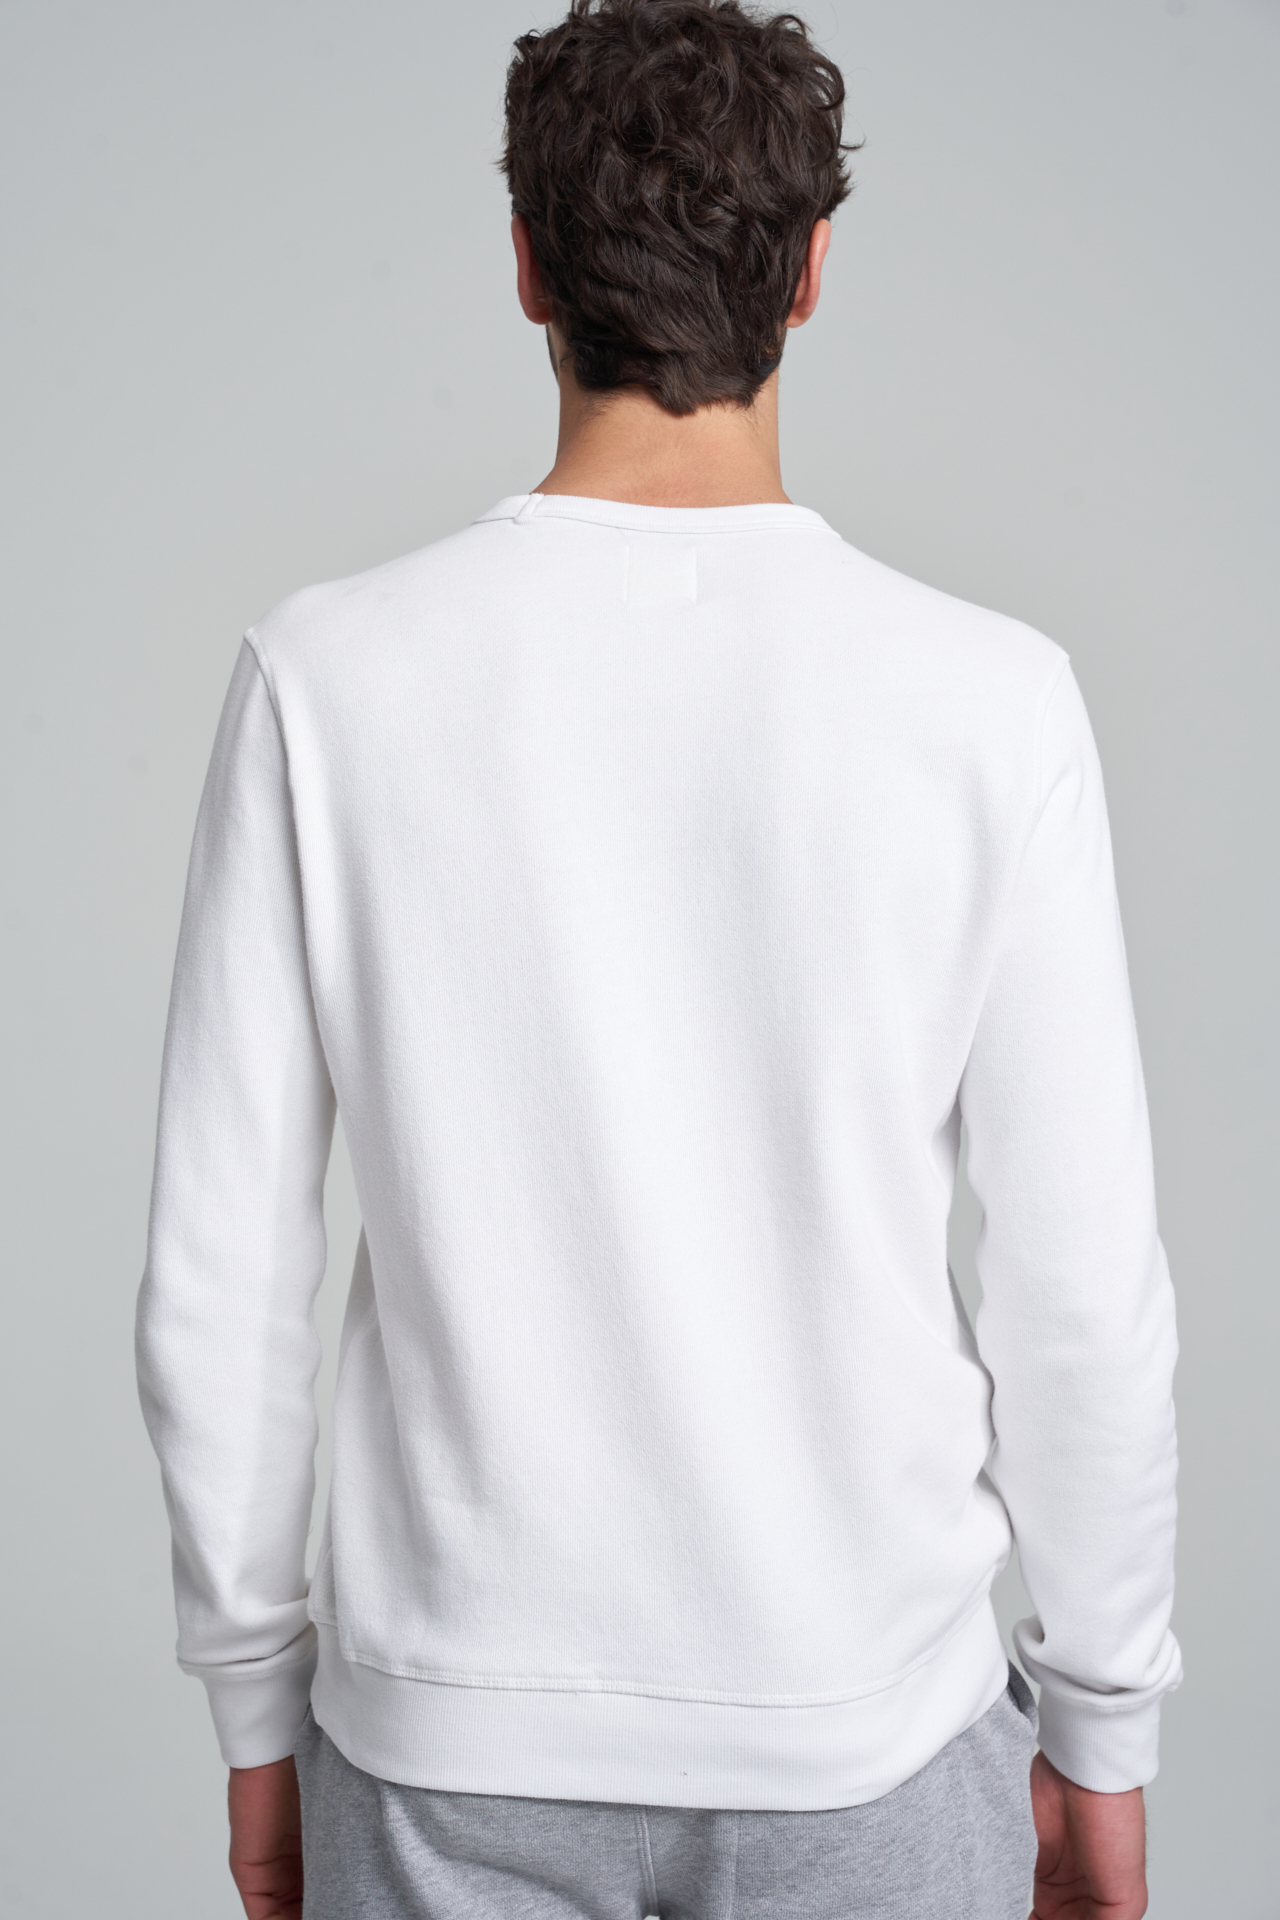 Sweatshirt Branco Casual Homem